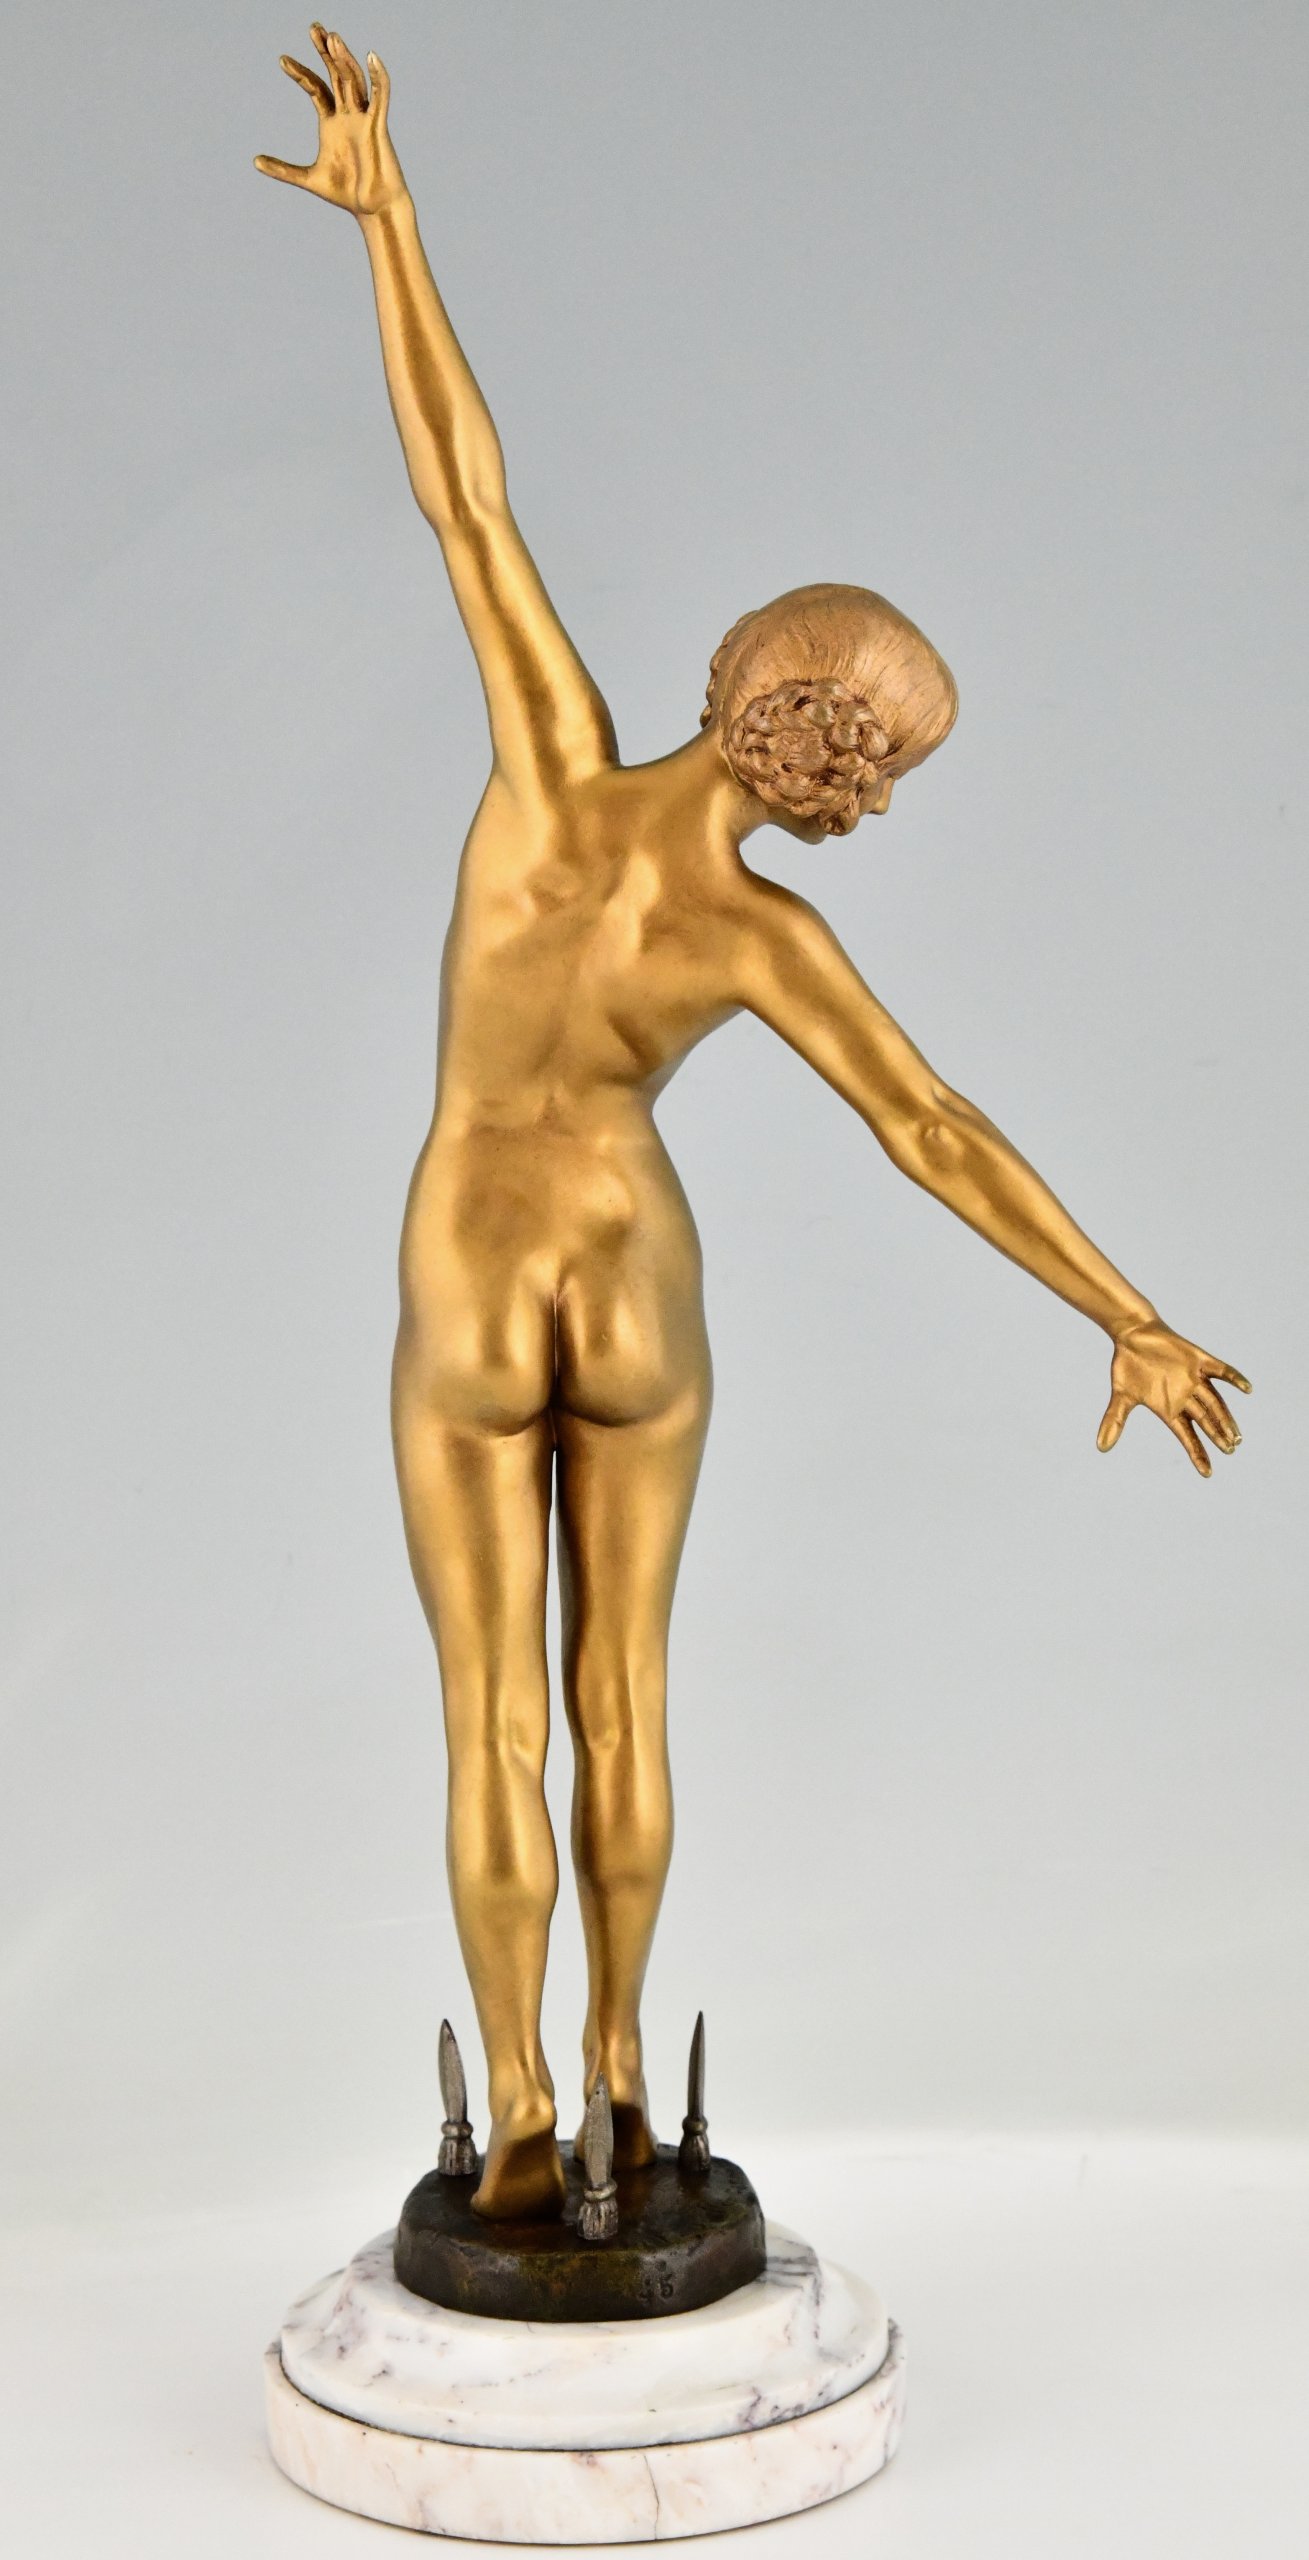 Art Deco bronzen sculptuur dansend naakt met dolken